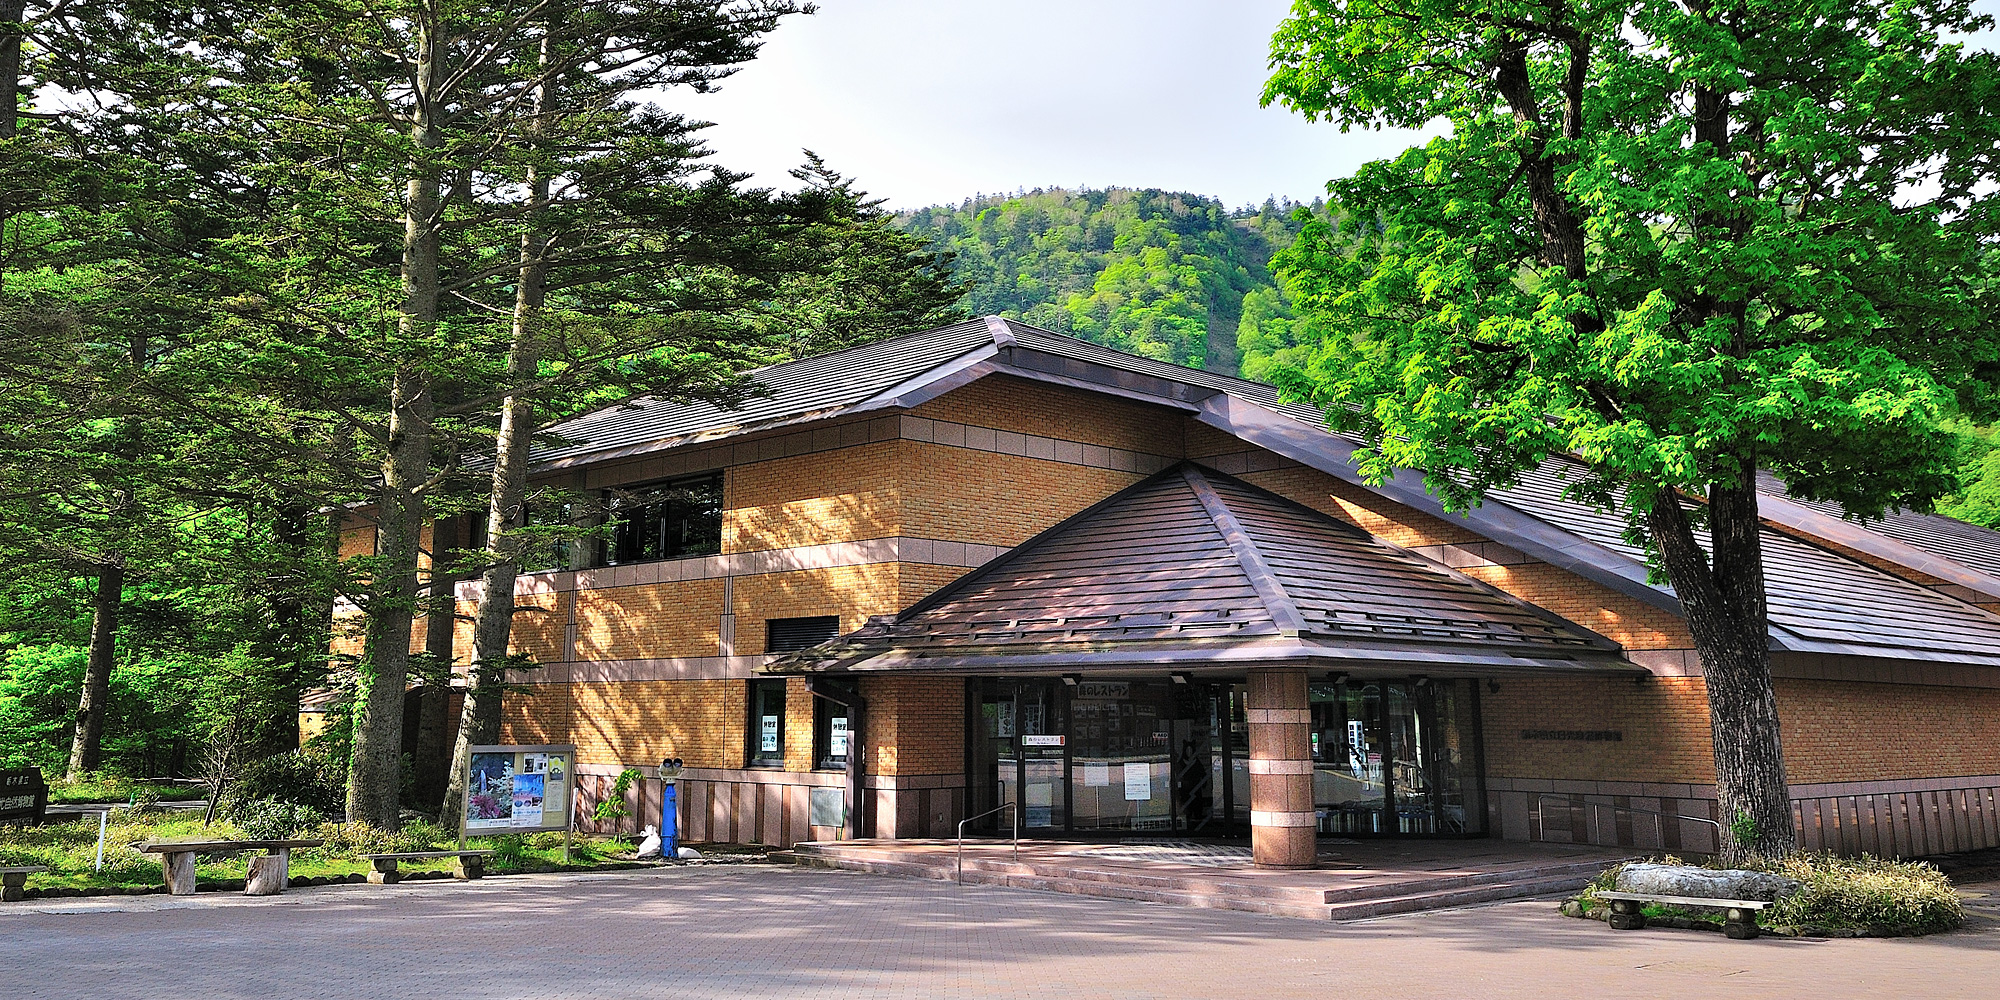 Nikko Natural Science Museum, Tochigi Prefecture